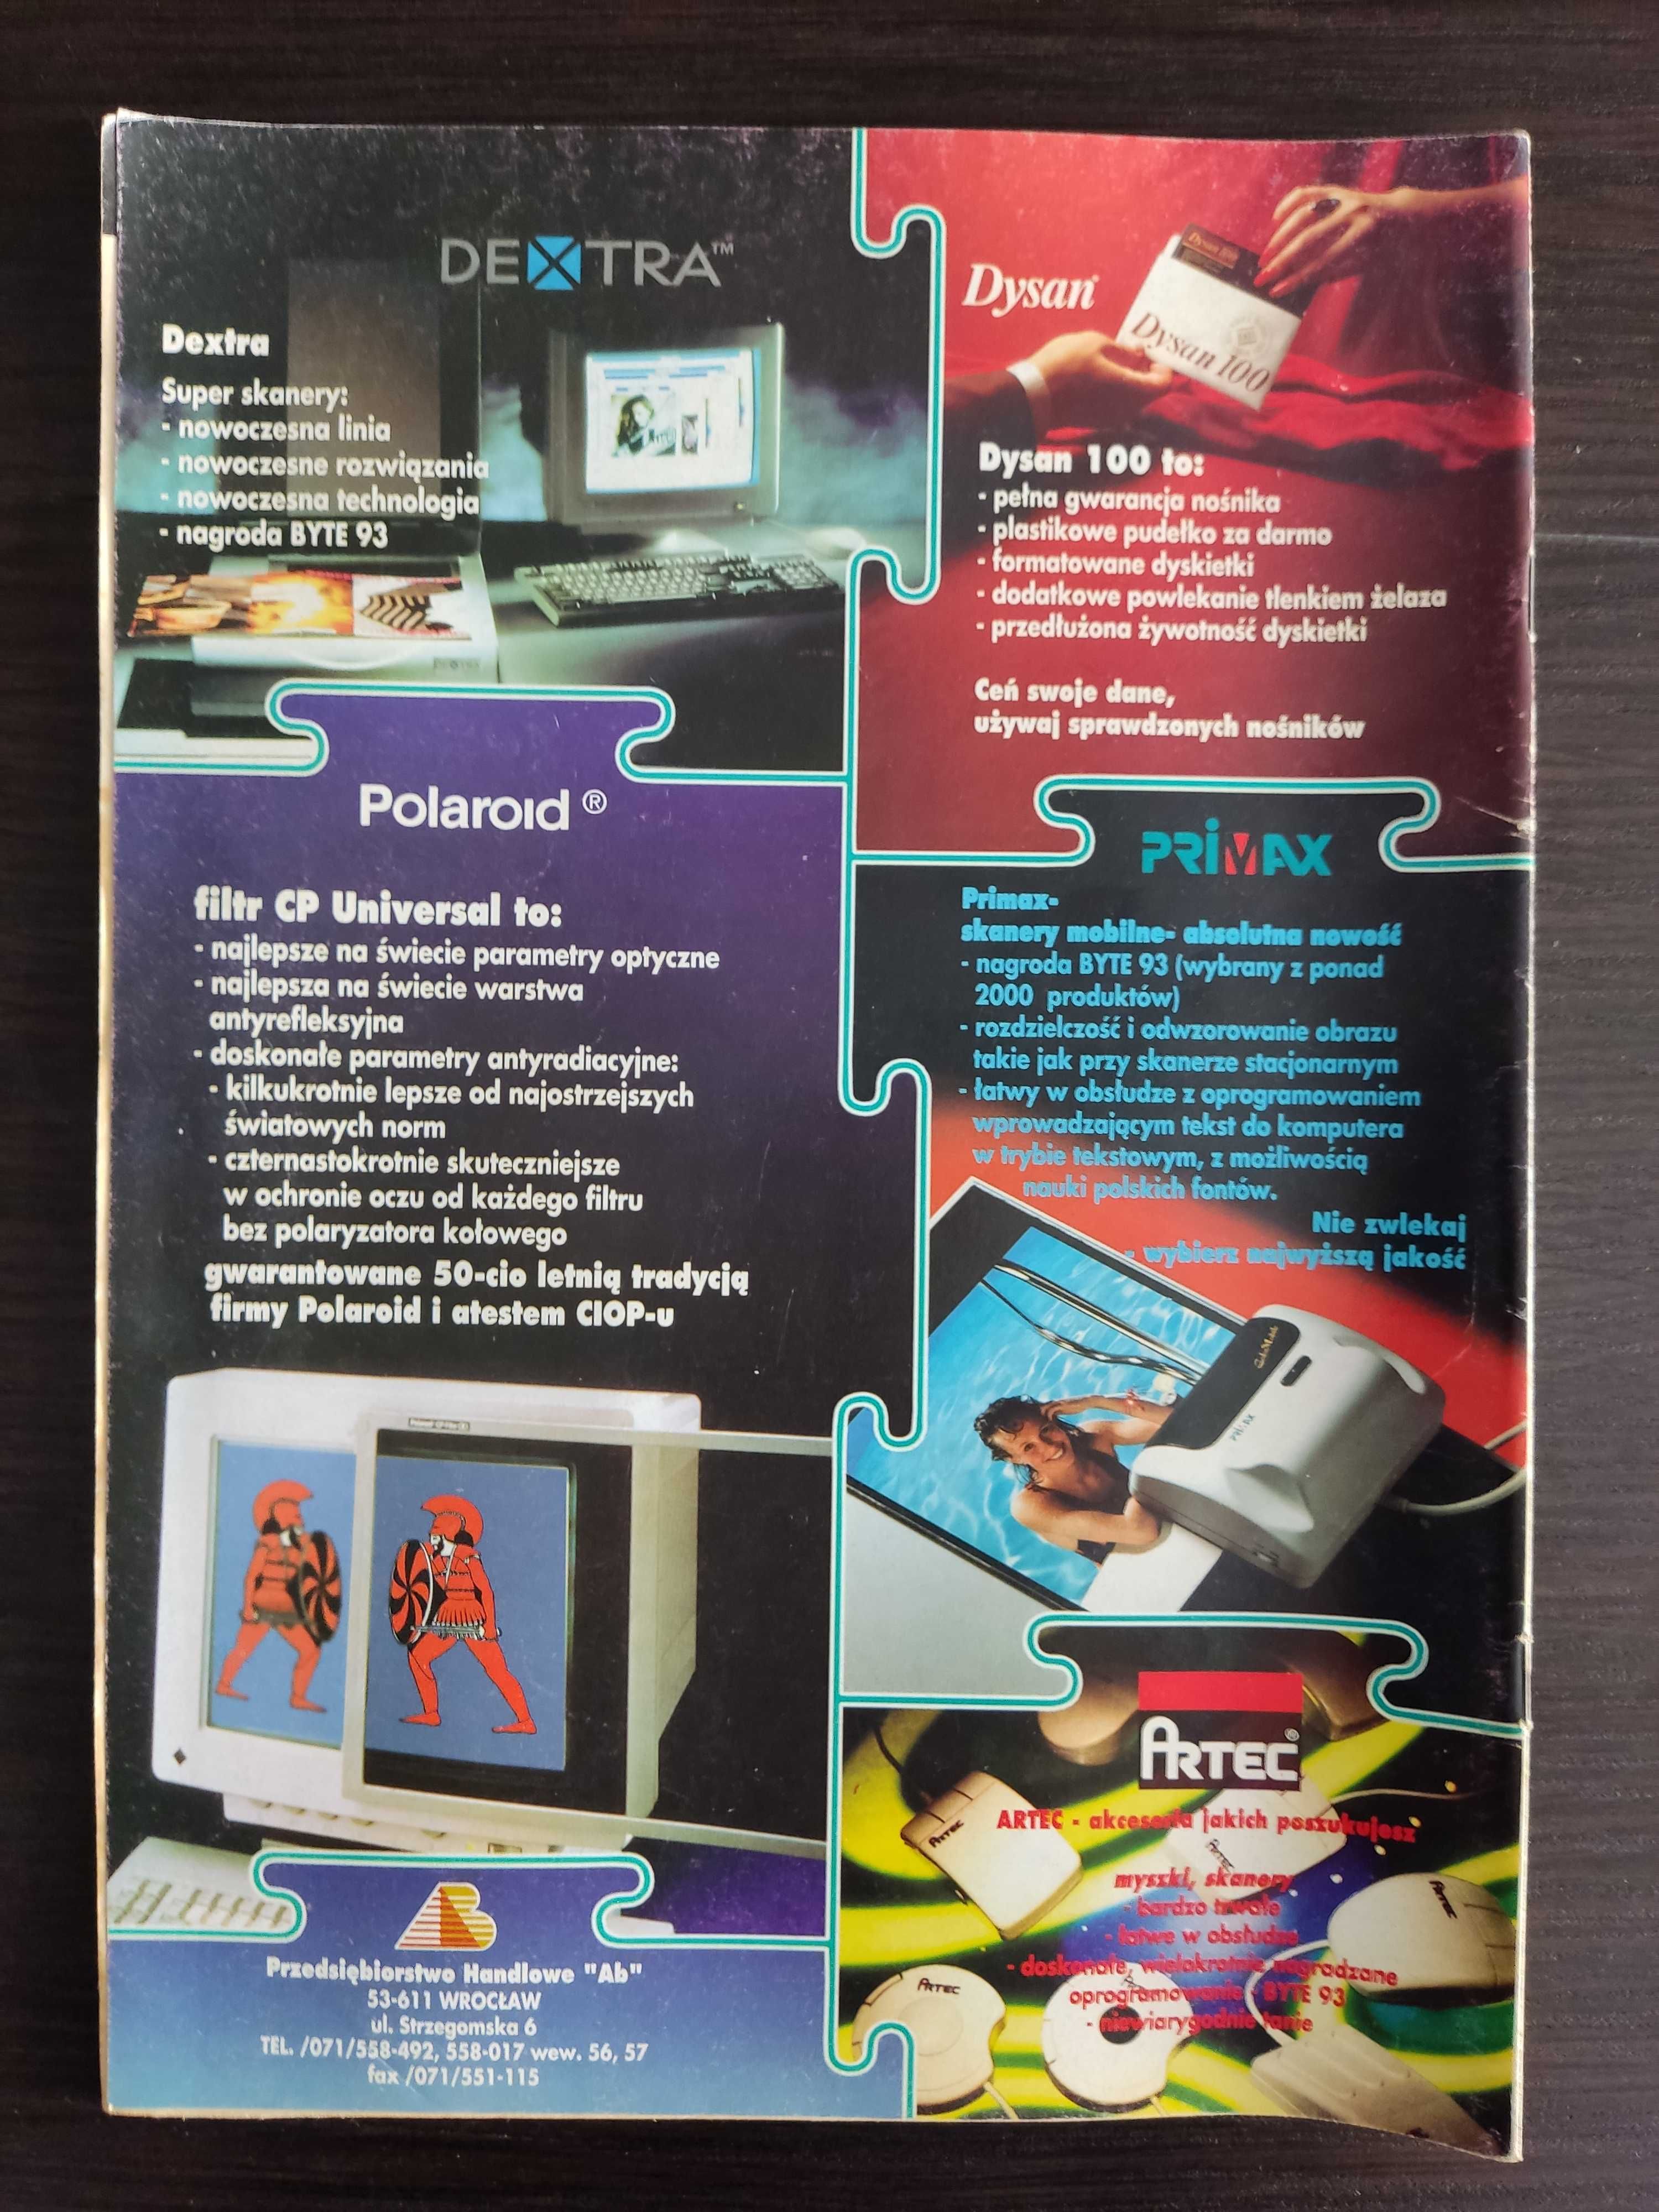 Amiga Magazyn - numer 3/1994